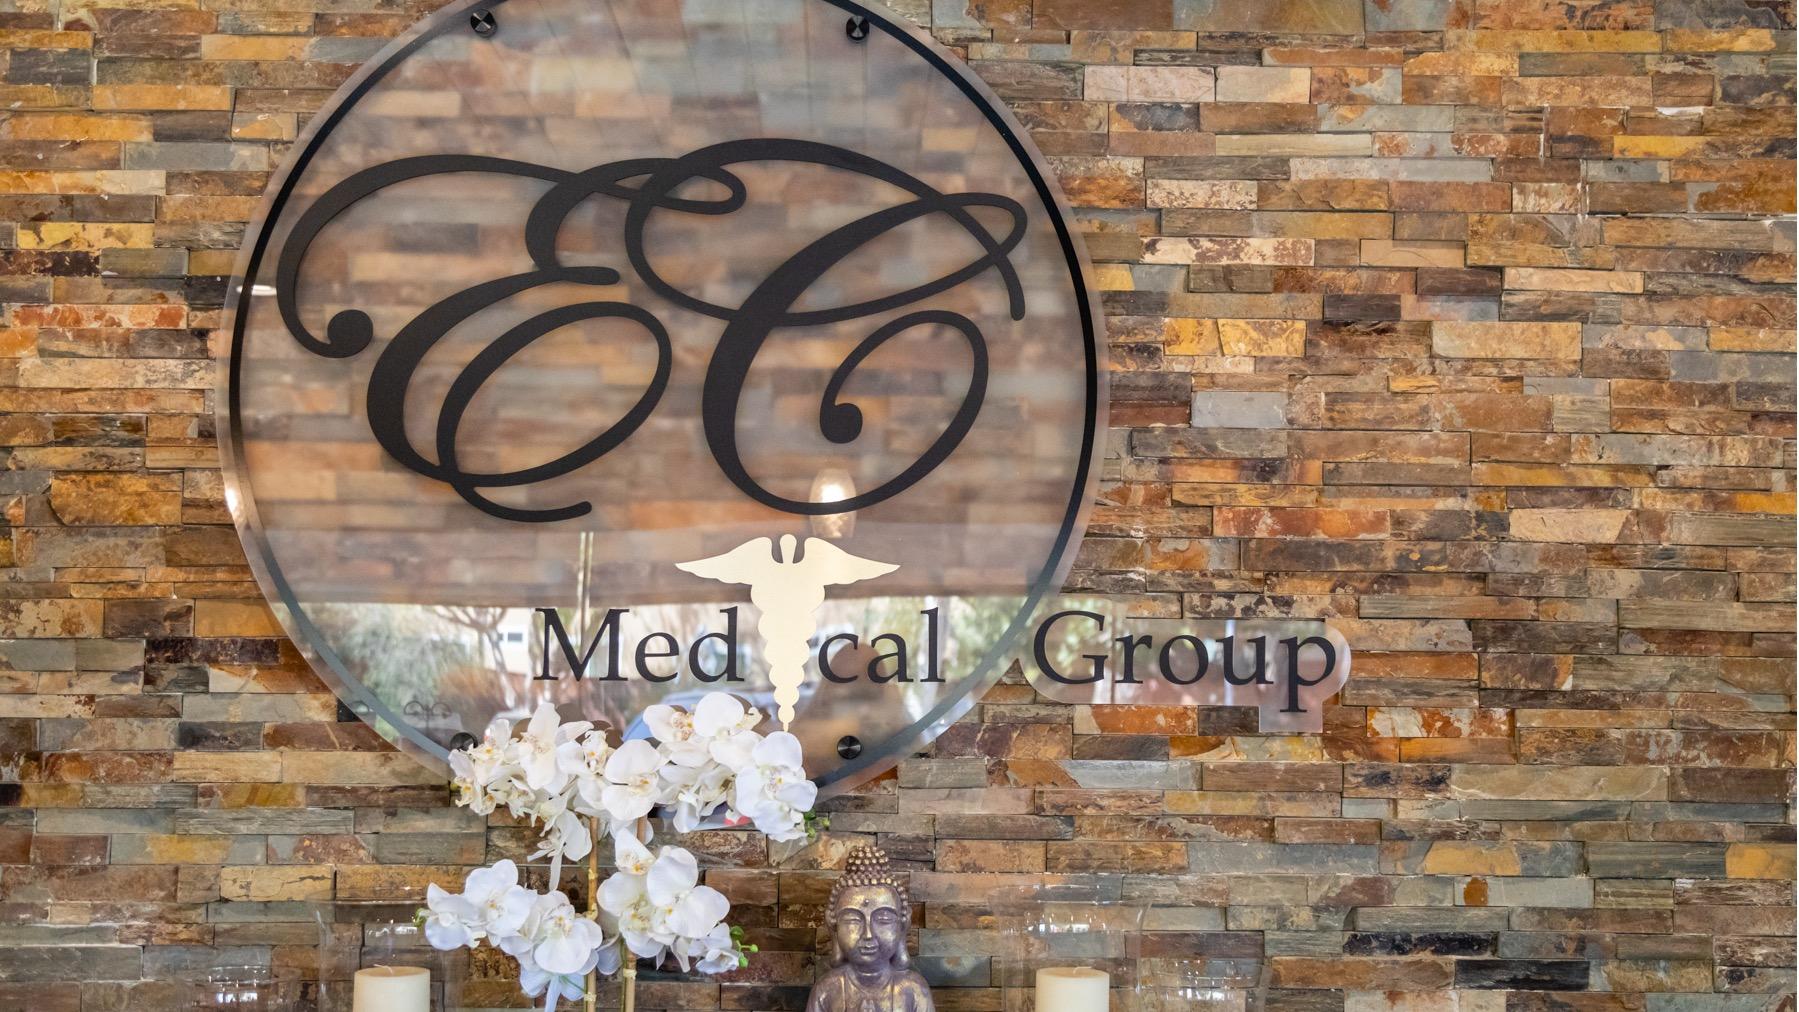 EC Medical Group